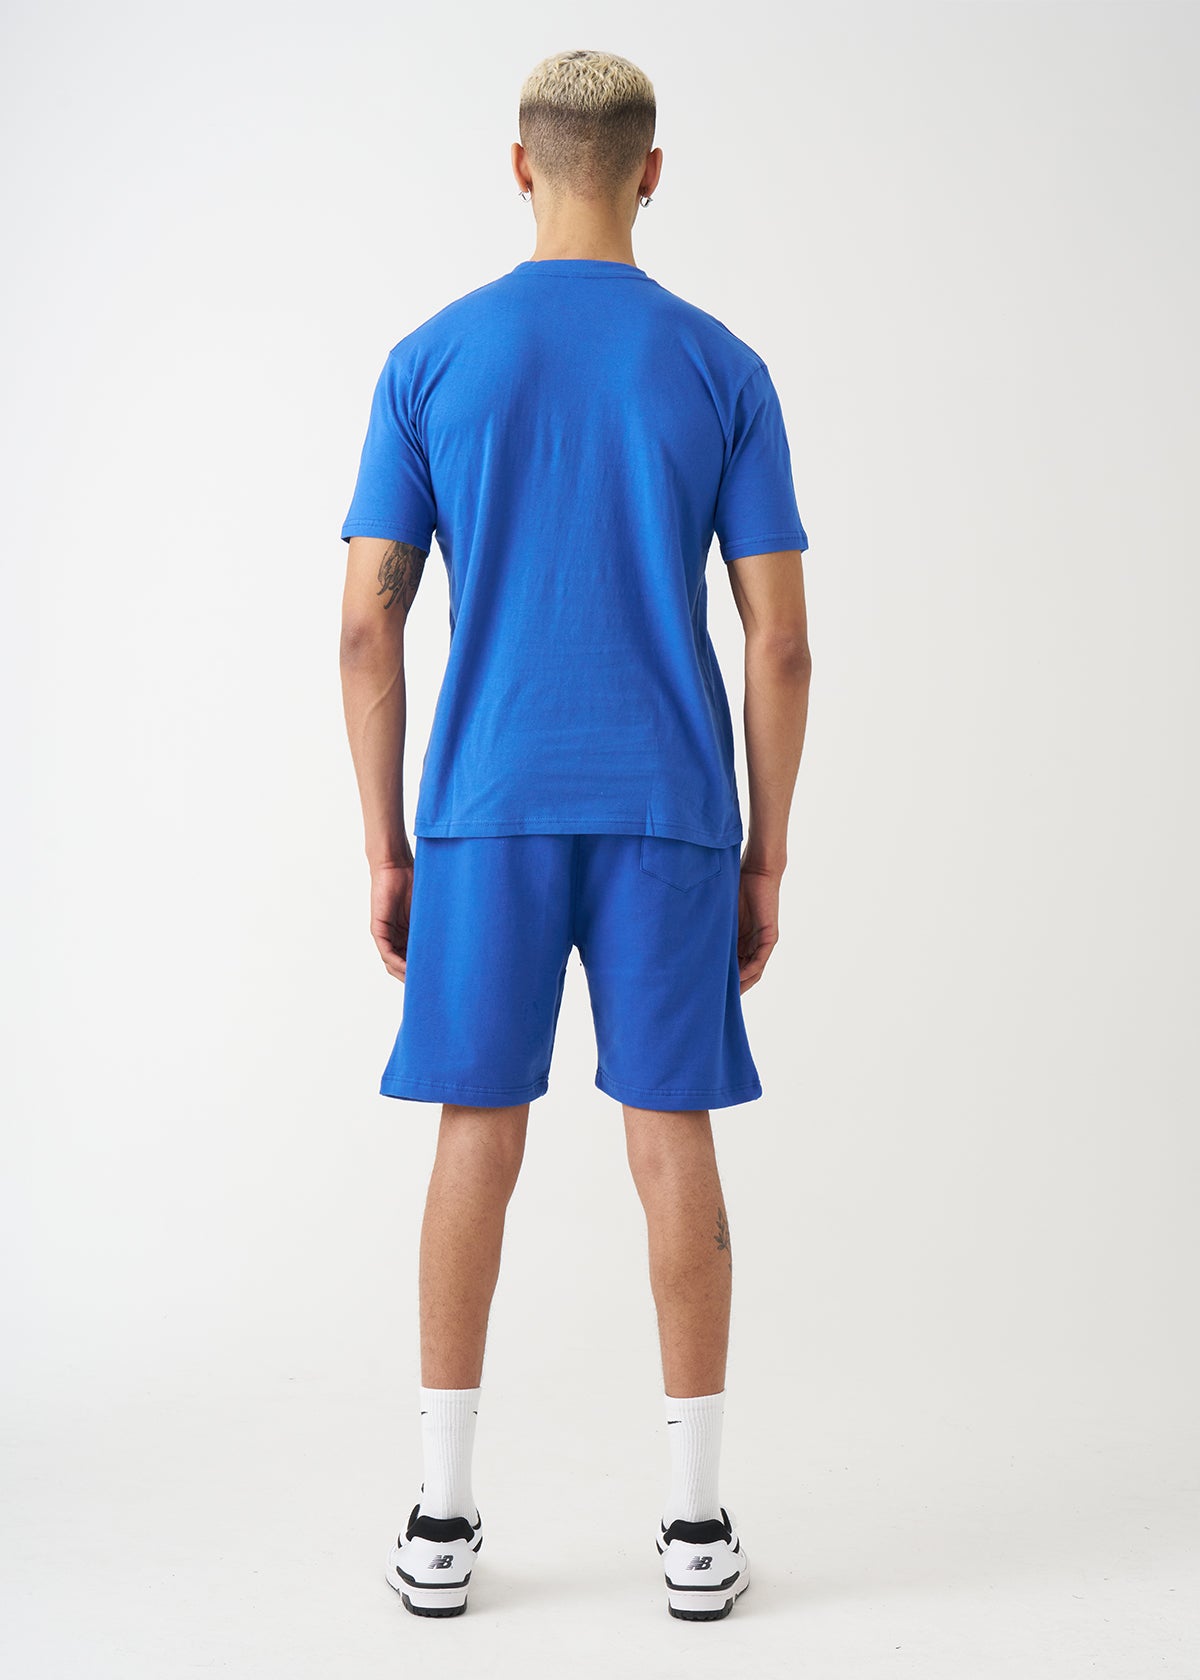 Royal Blue T-Shirt And Short Set